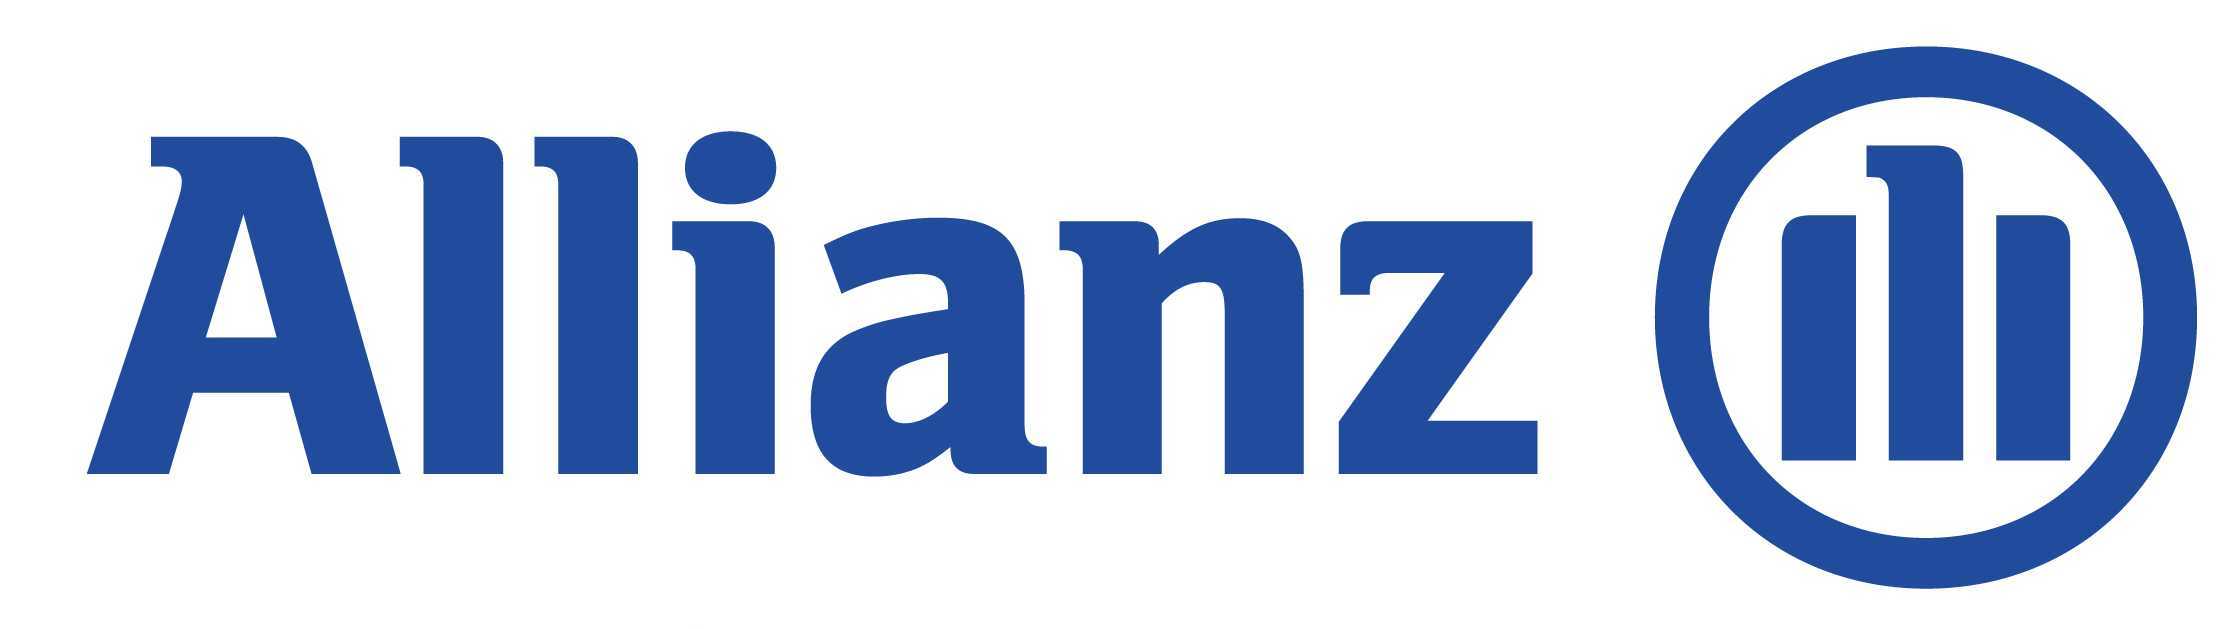 allianz logo -high res